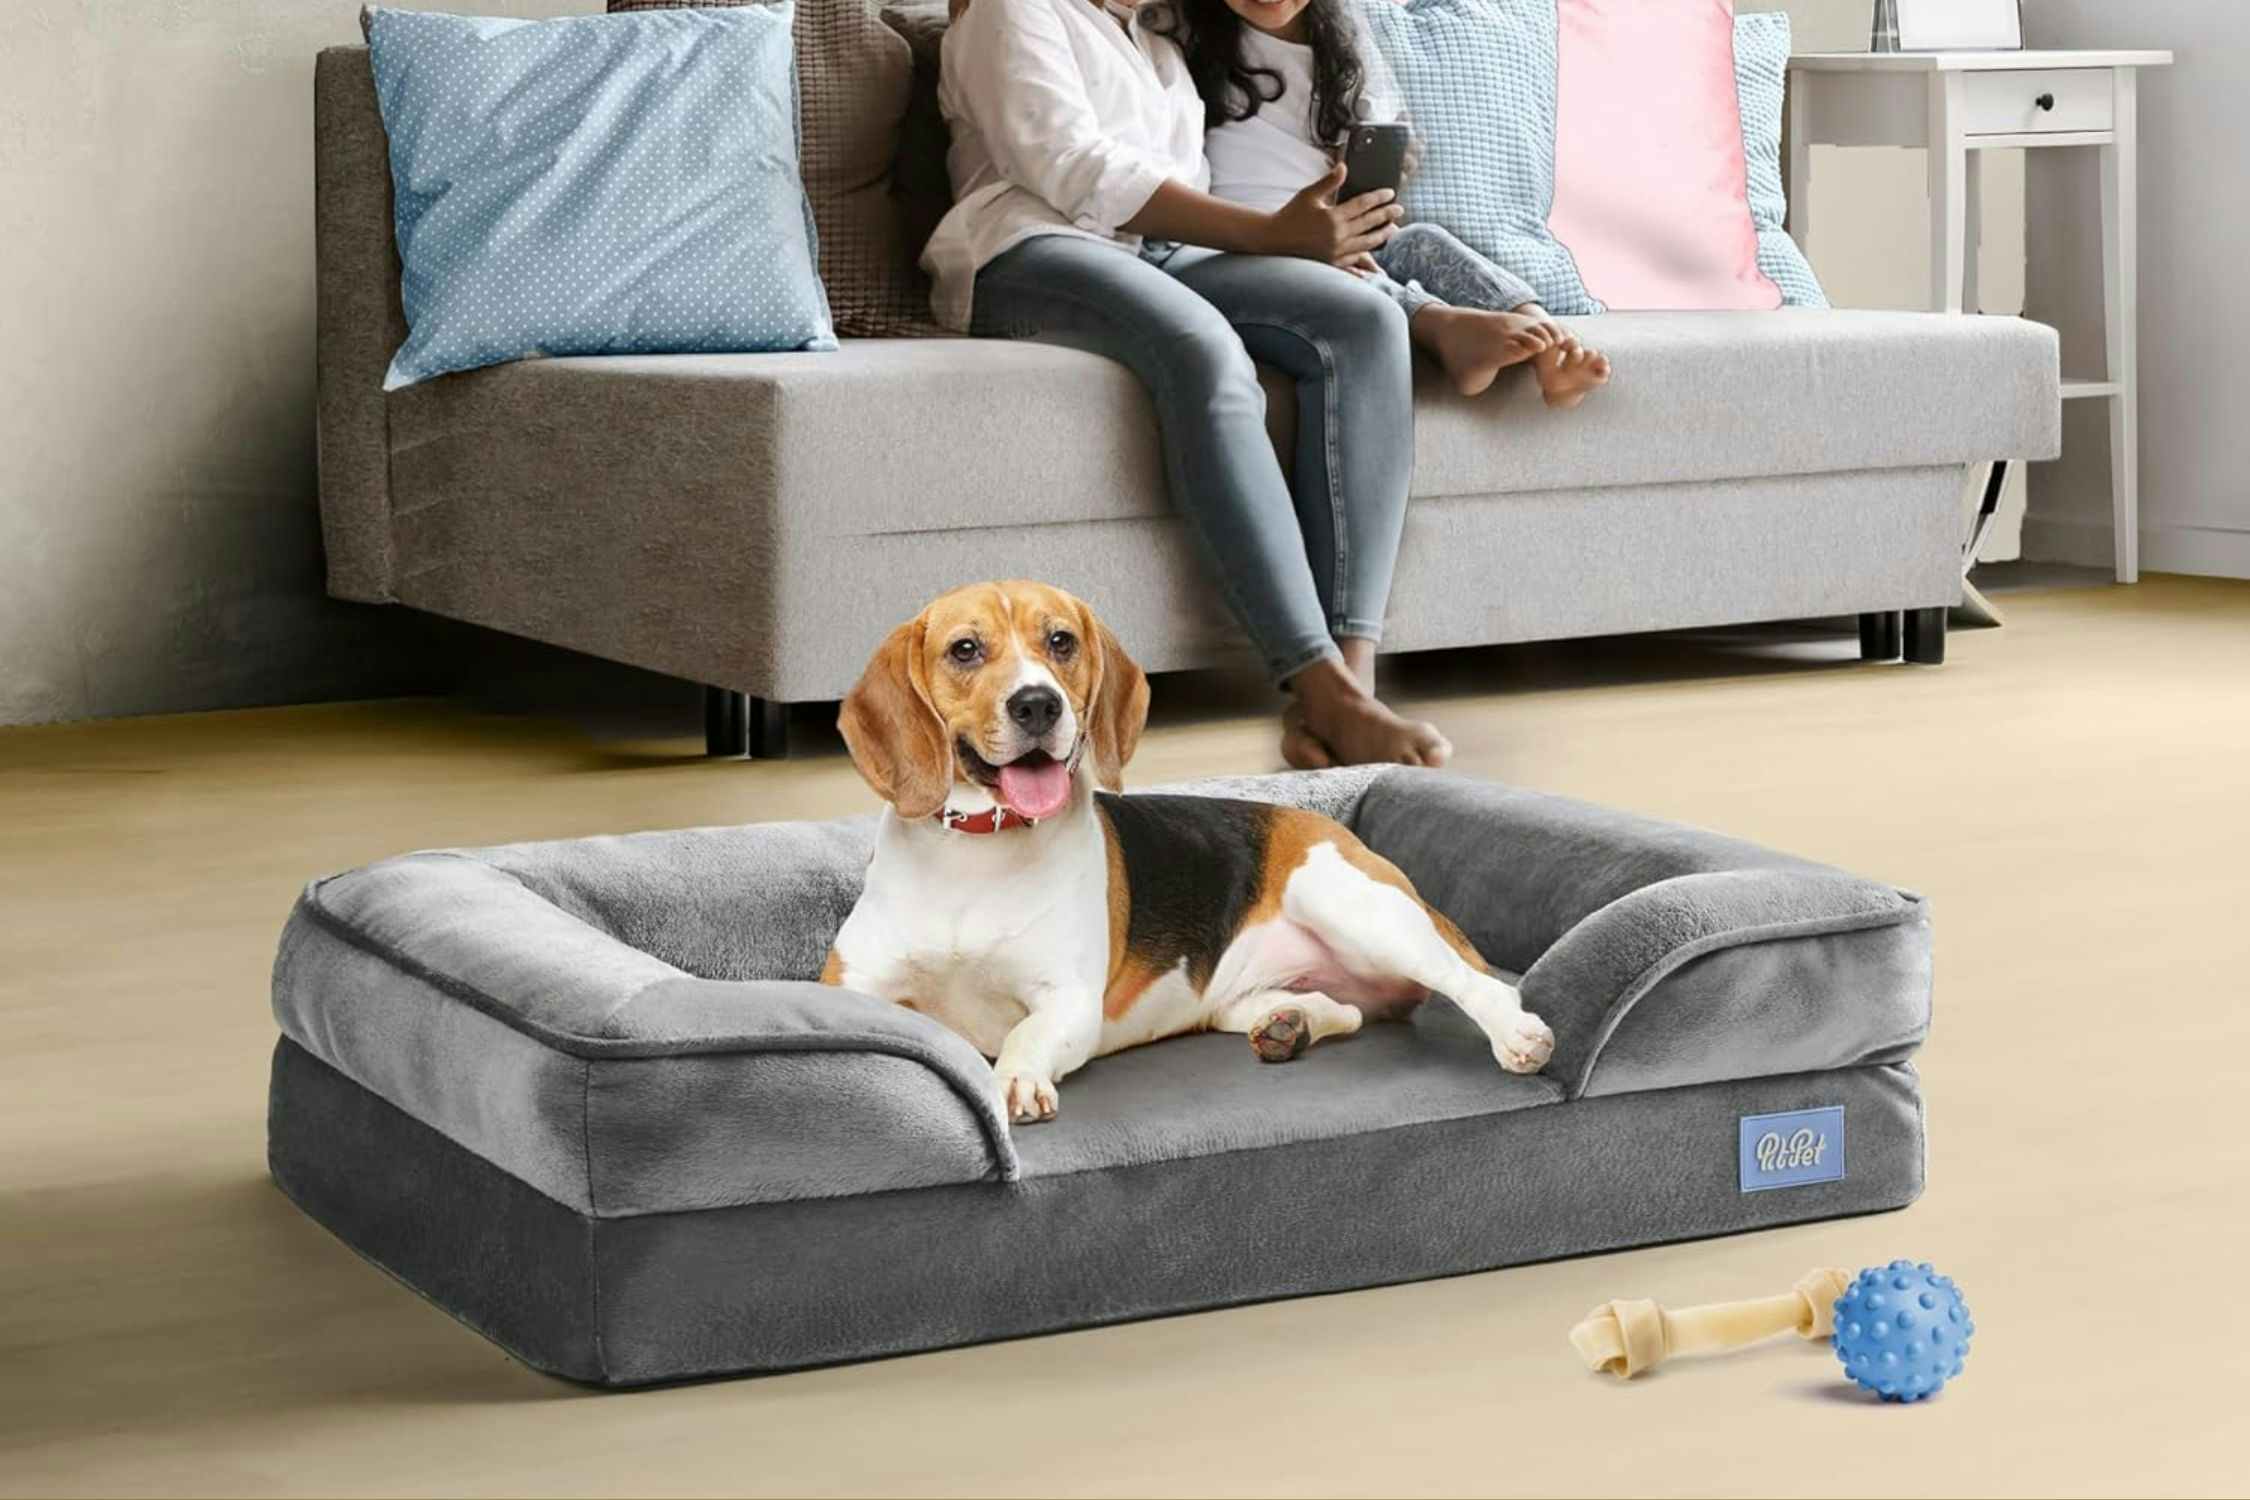 Orthopedic Sofa Dog Bed, Just $22 on Amazon (Reg. $50)